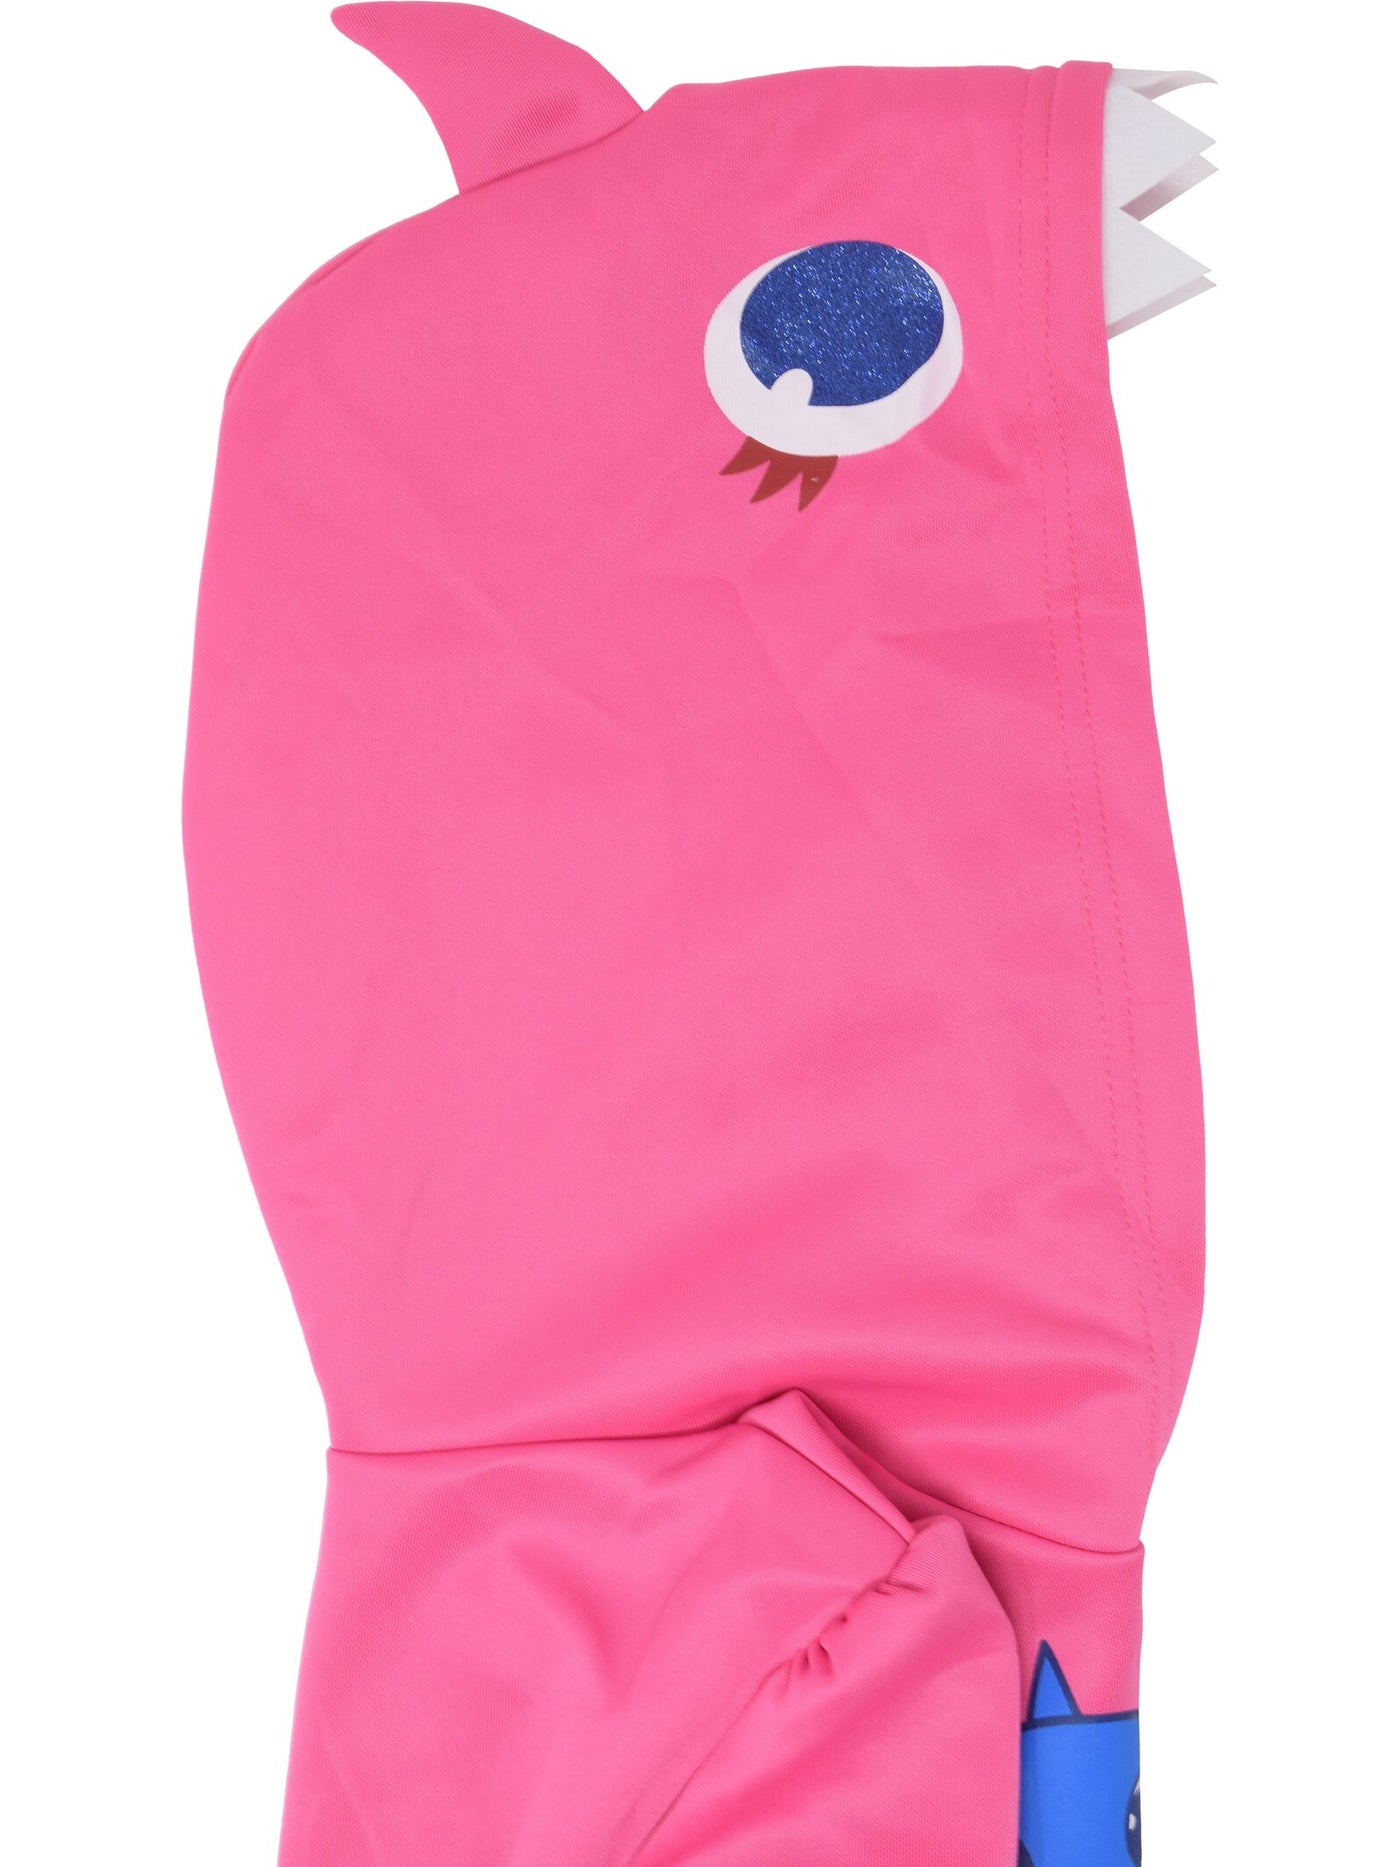 Pinkfong Baby Shark Costume Dress